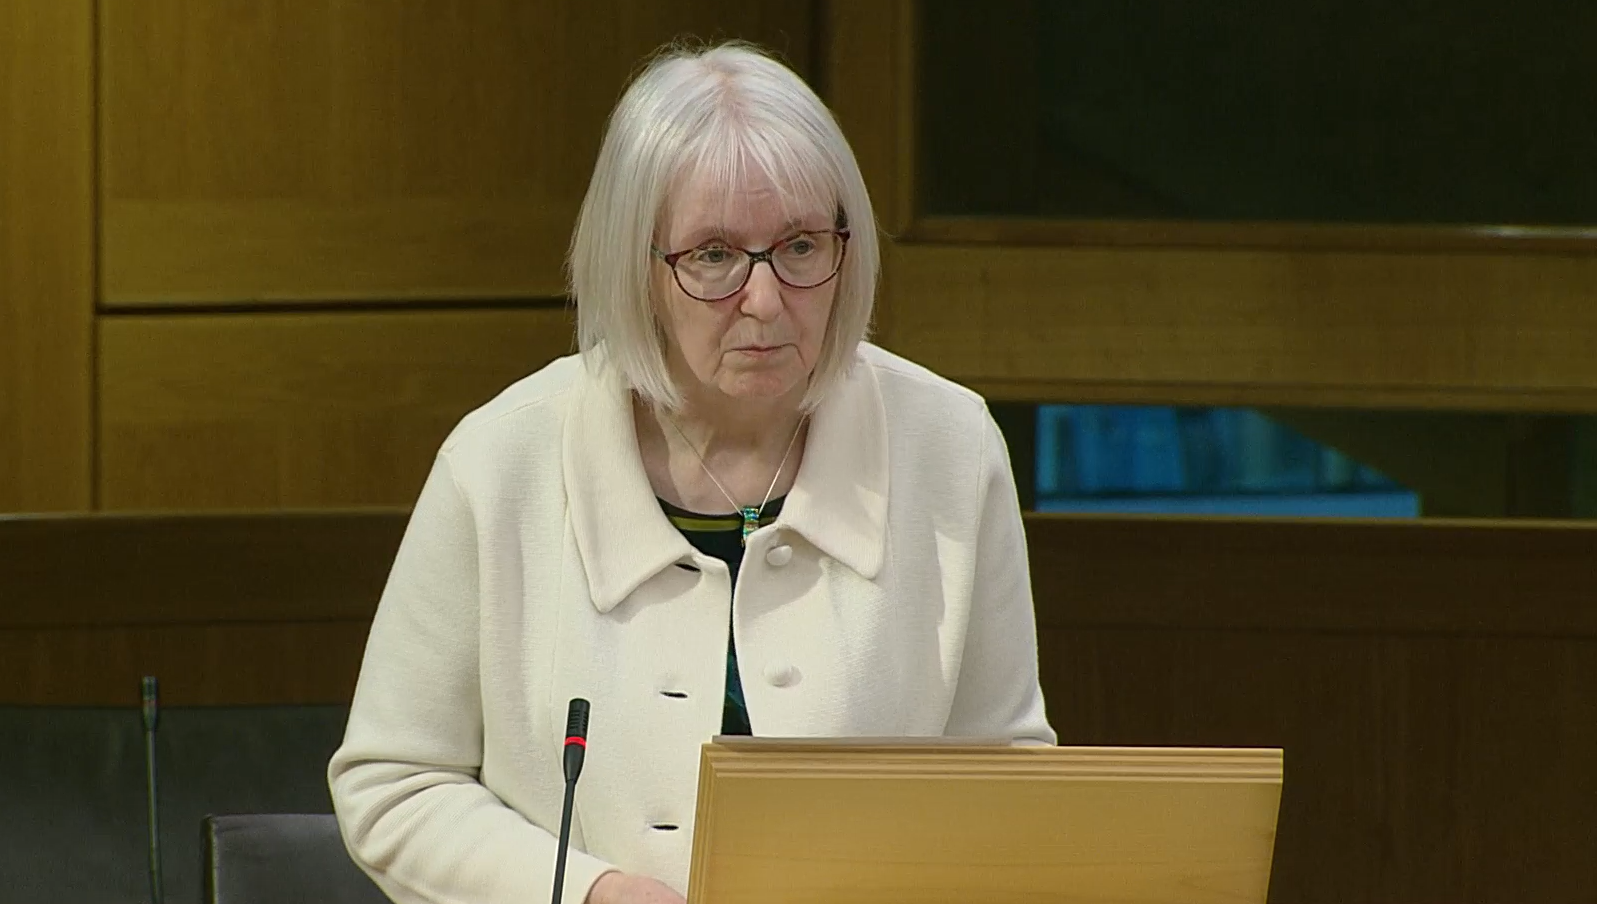 Beatrice Wishart MSP speaking in the Scottish Parliament chamber